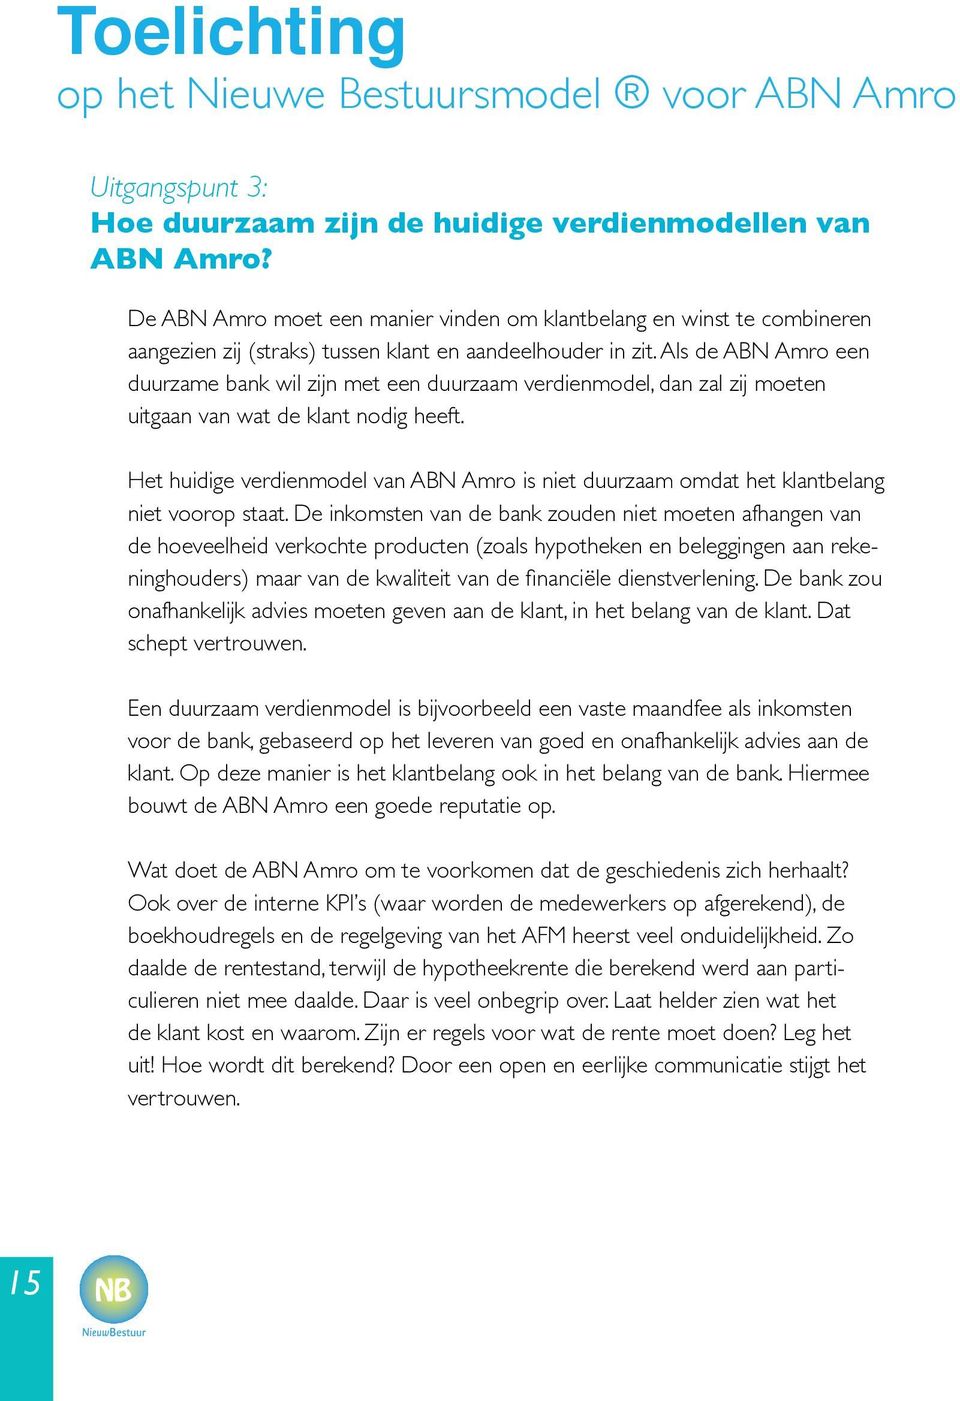 Als de ABN Amro een duurzame bank wil zijn met een duurzaam verdienmodel, dan zal zij moeten uitgaan van wat de klant nodig heeft.